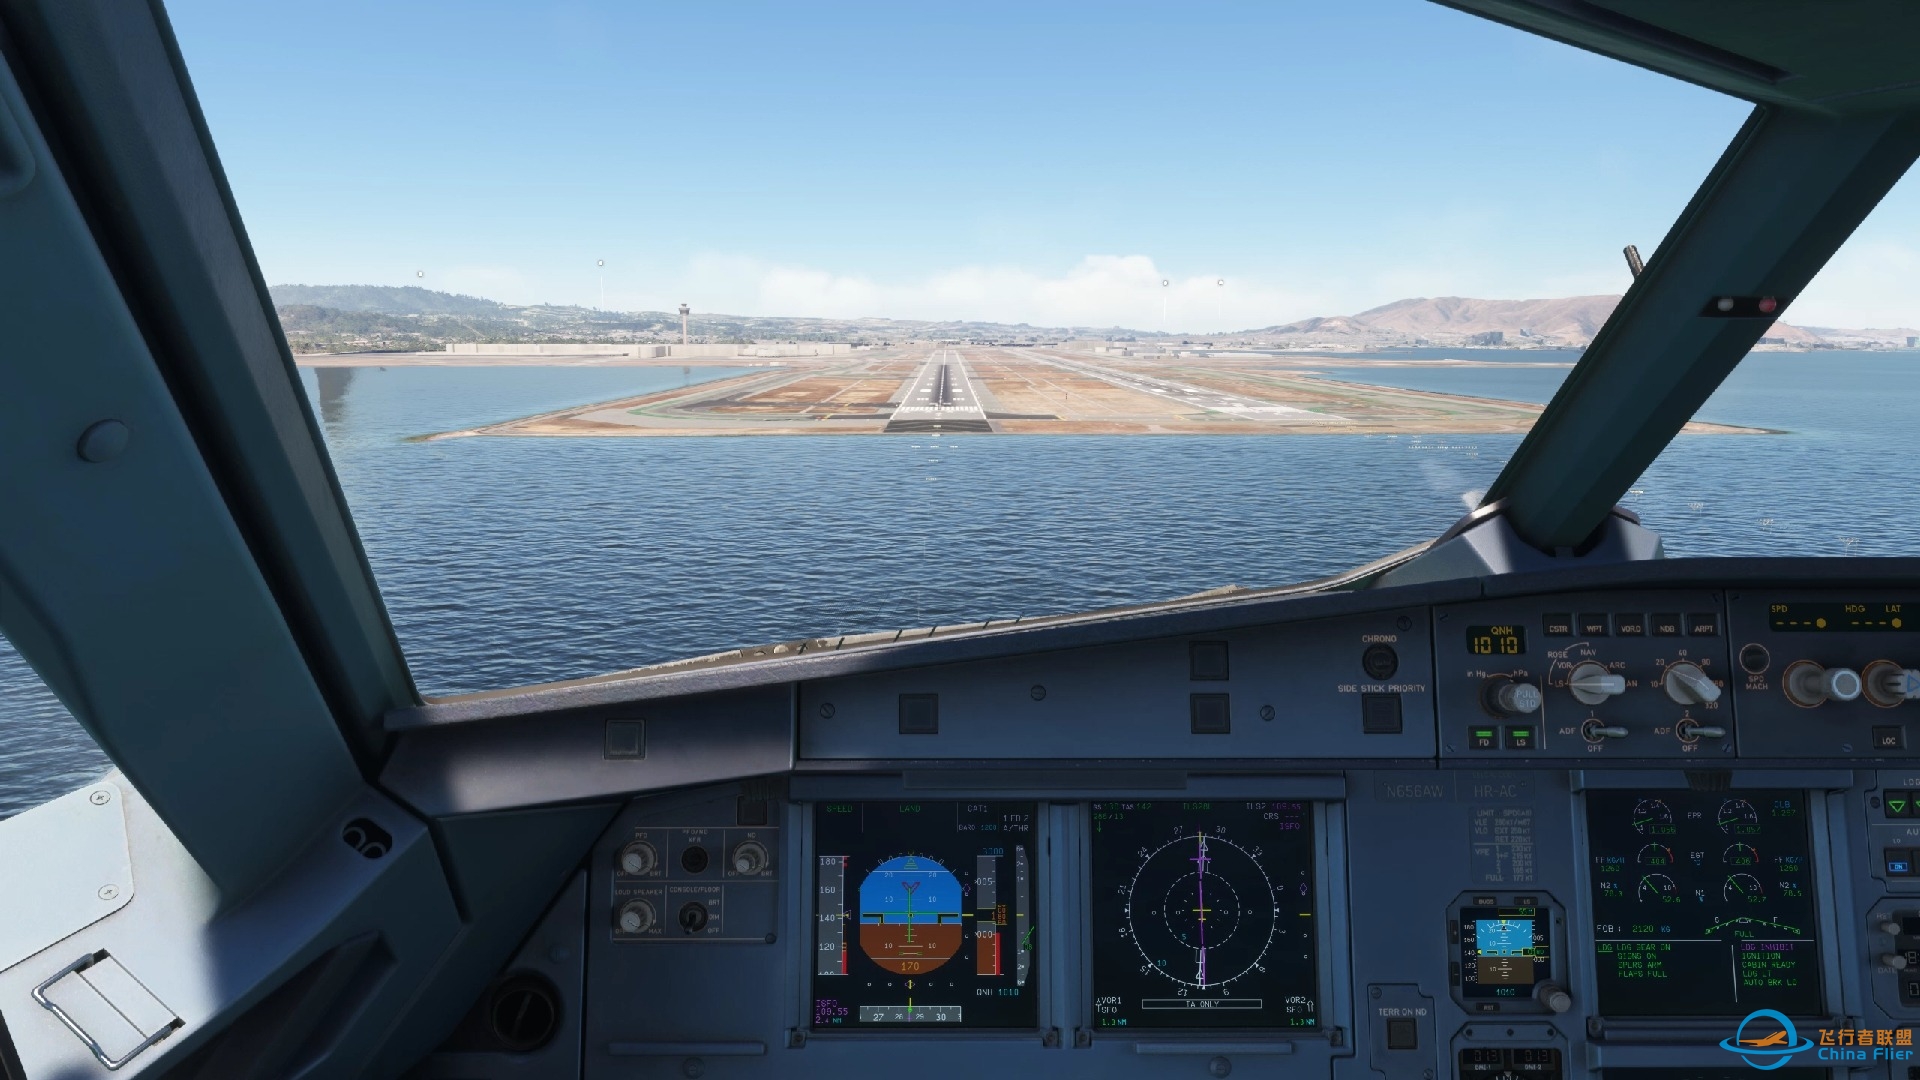 【模拟环球飞行】微软模拟飞行2020 MSFS2020 FenixA320 KSFO 旧金山海边最终进近 你看到金门大桥了吗-2989 